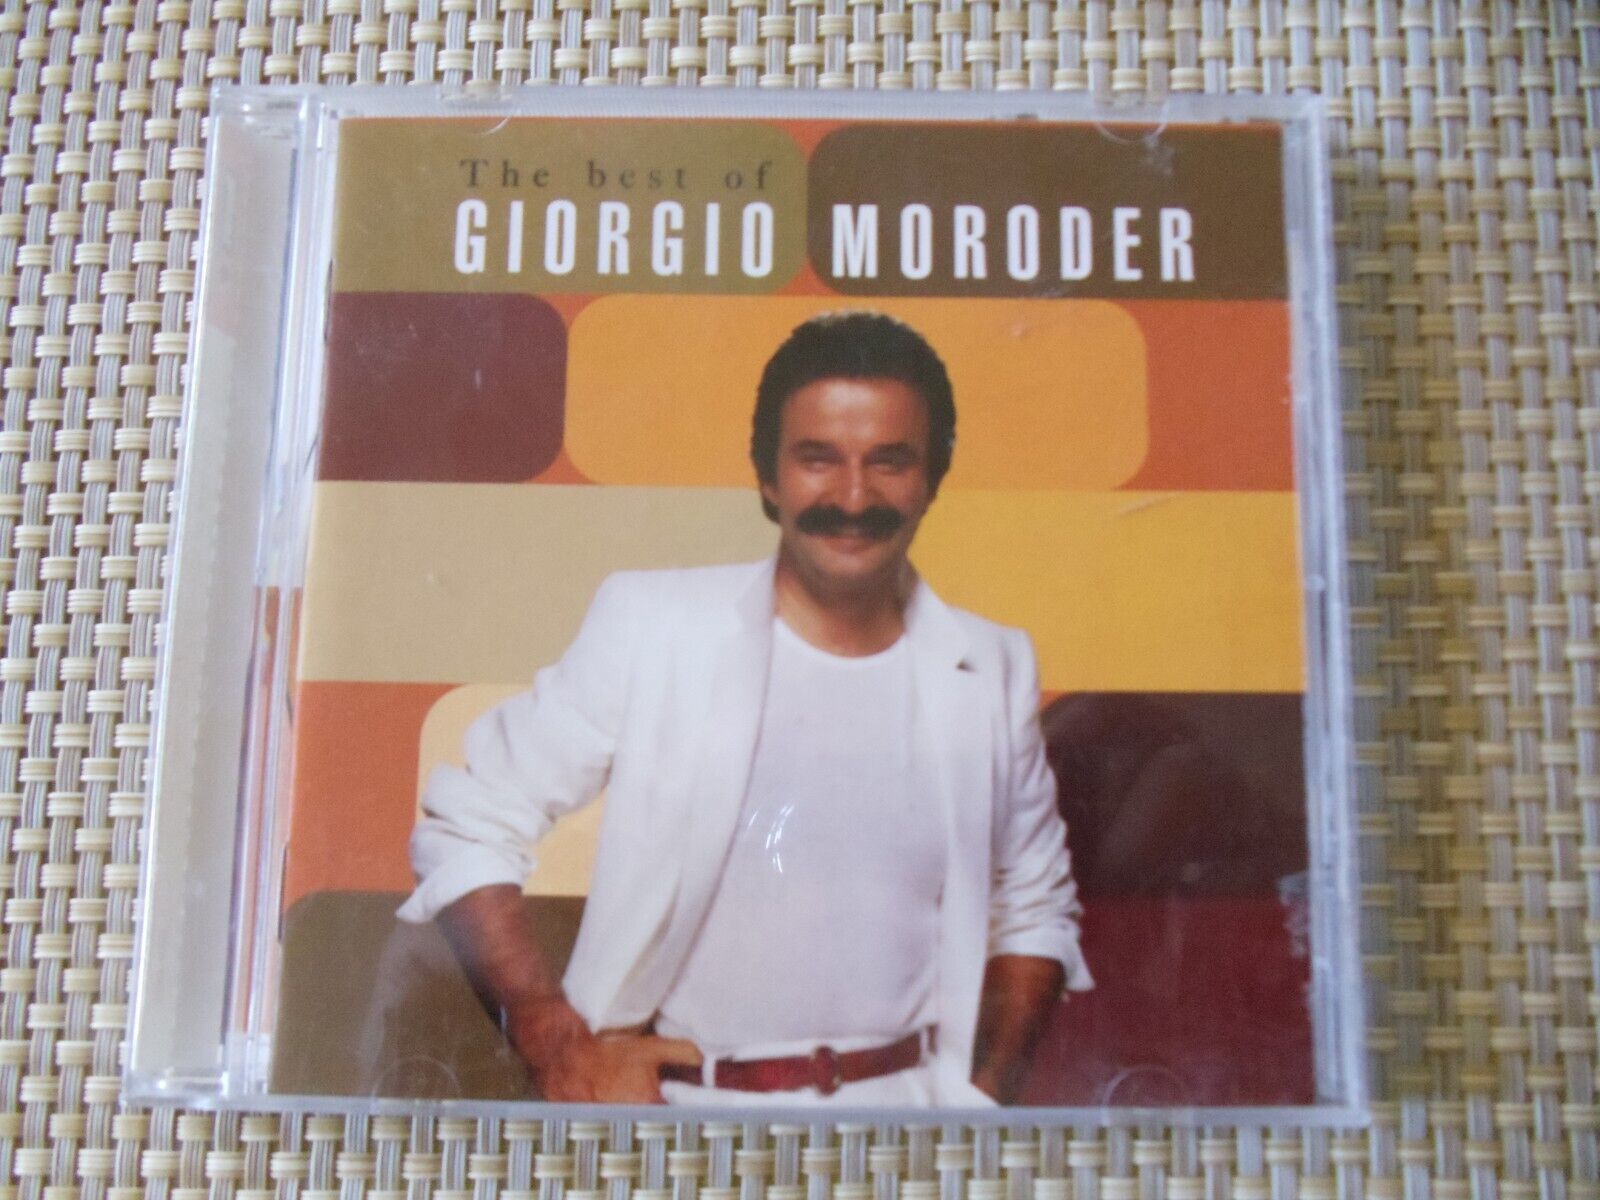 The Best of Giorgio Moroder;  2001  Repertoire Rec.  CD  17 Songs   LIKE NEW